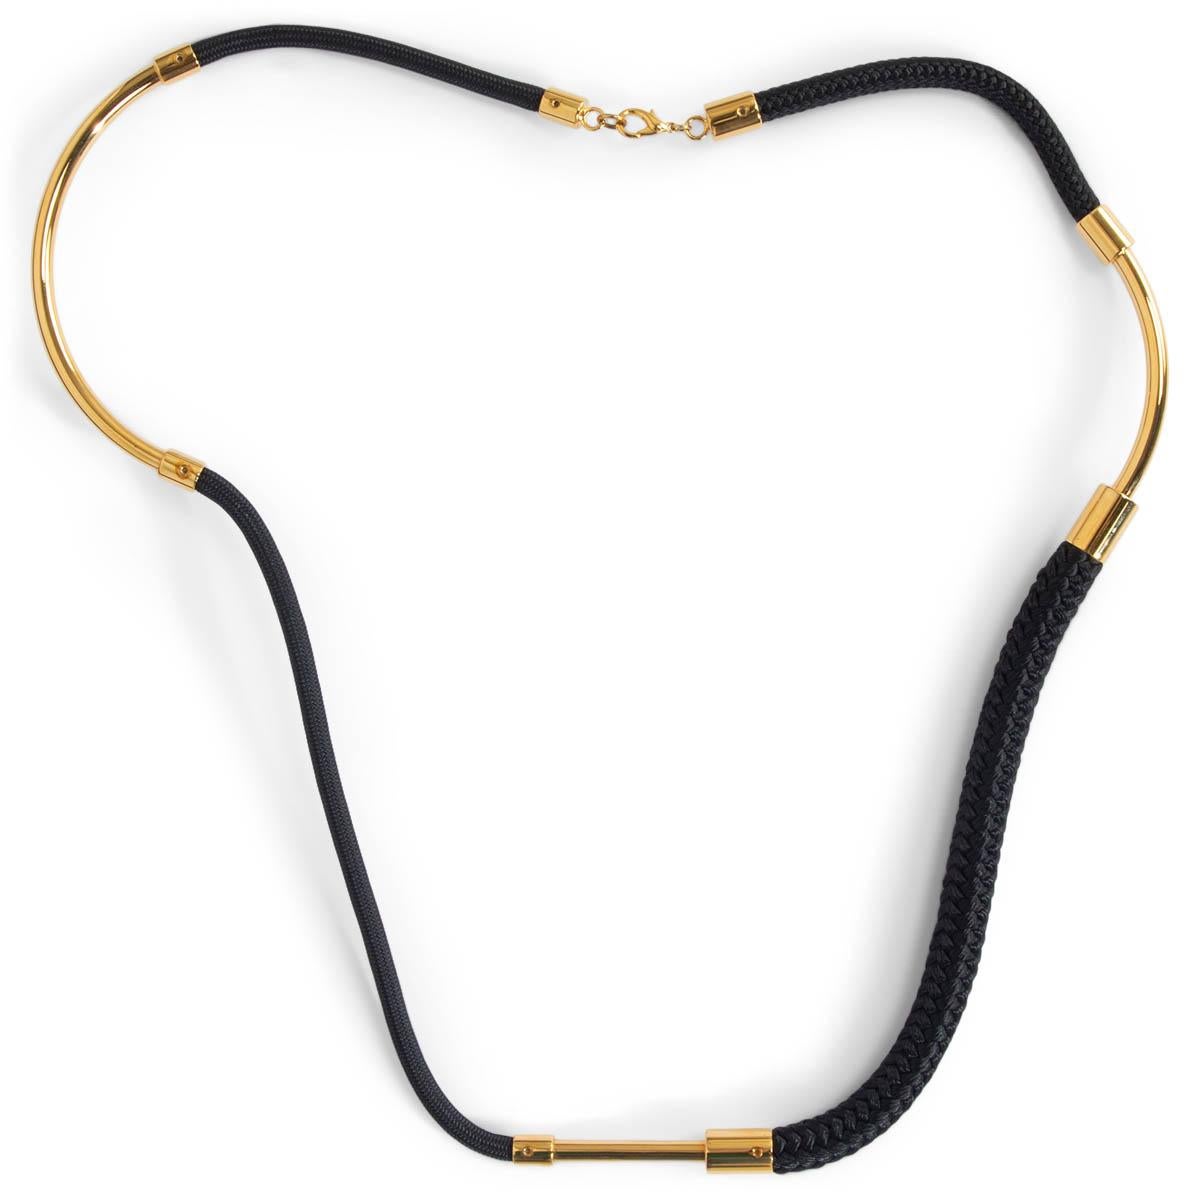 100% authentische Marni Halskette aus schwarzem Seil und runden, goldfarbenen Metalldetails aus Messing. Wurde getragen und ist in ausgezeichnetem Zustand. Wird mit Staubbeutel geliefert. 

Messungen
Länge	48cm (18.7in)

Alle unsere Angebote